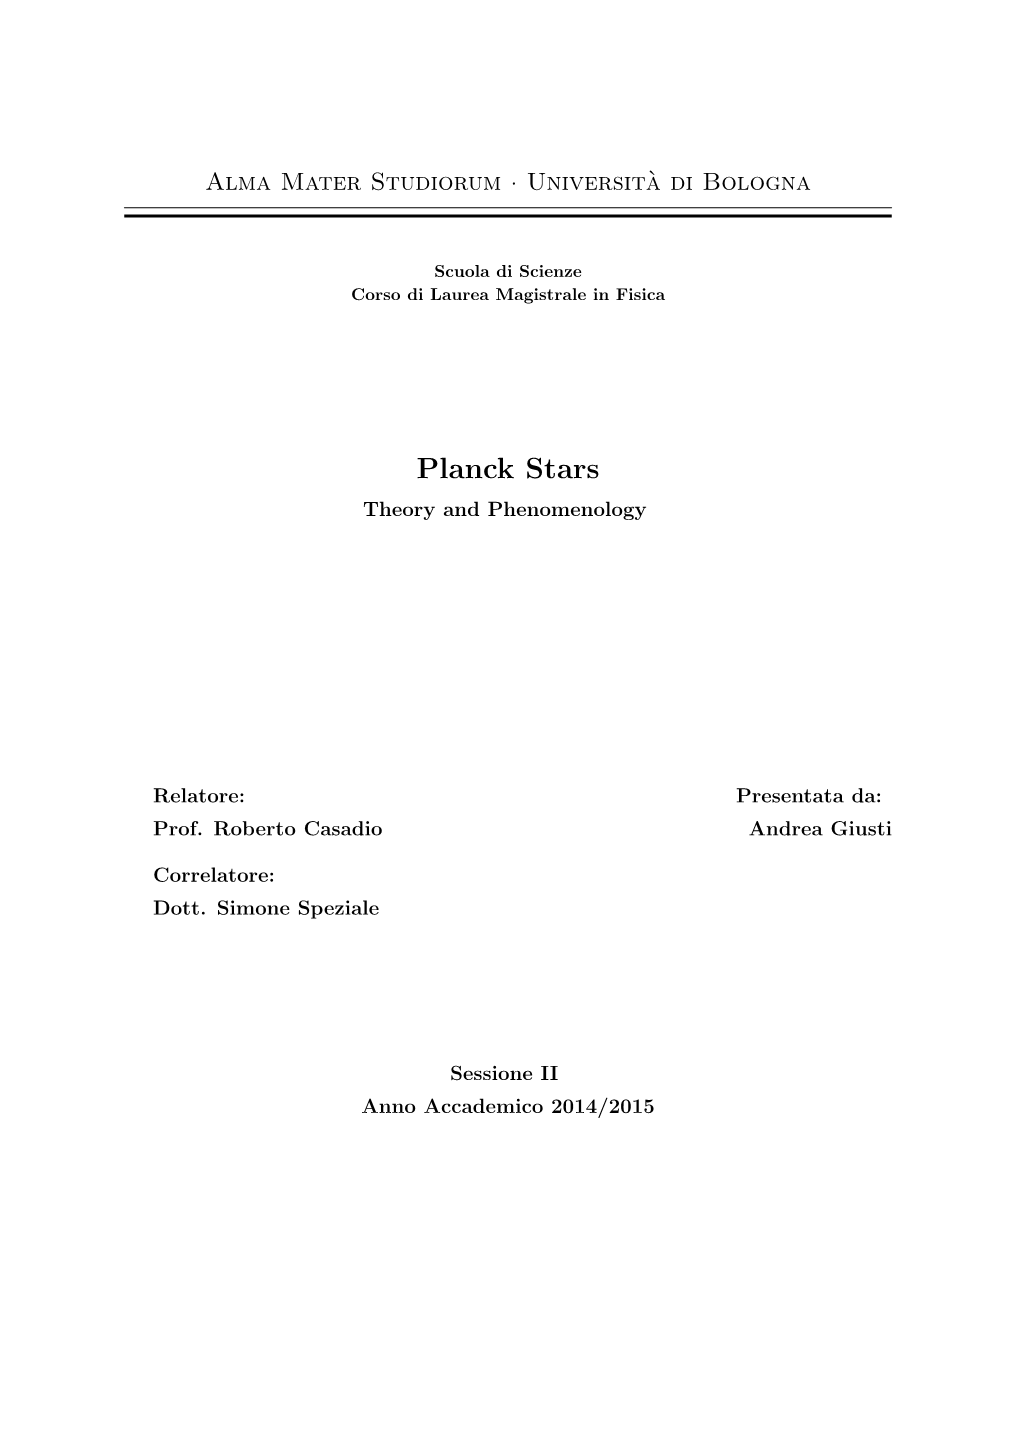 Planck Stars Theory and Phenomenology